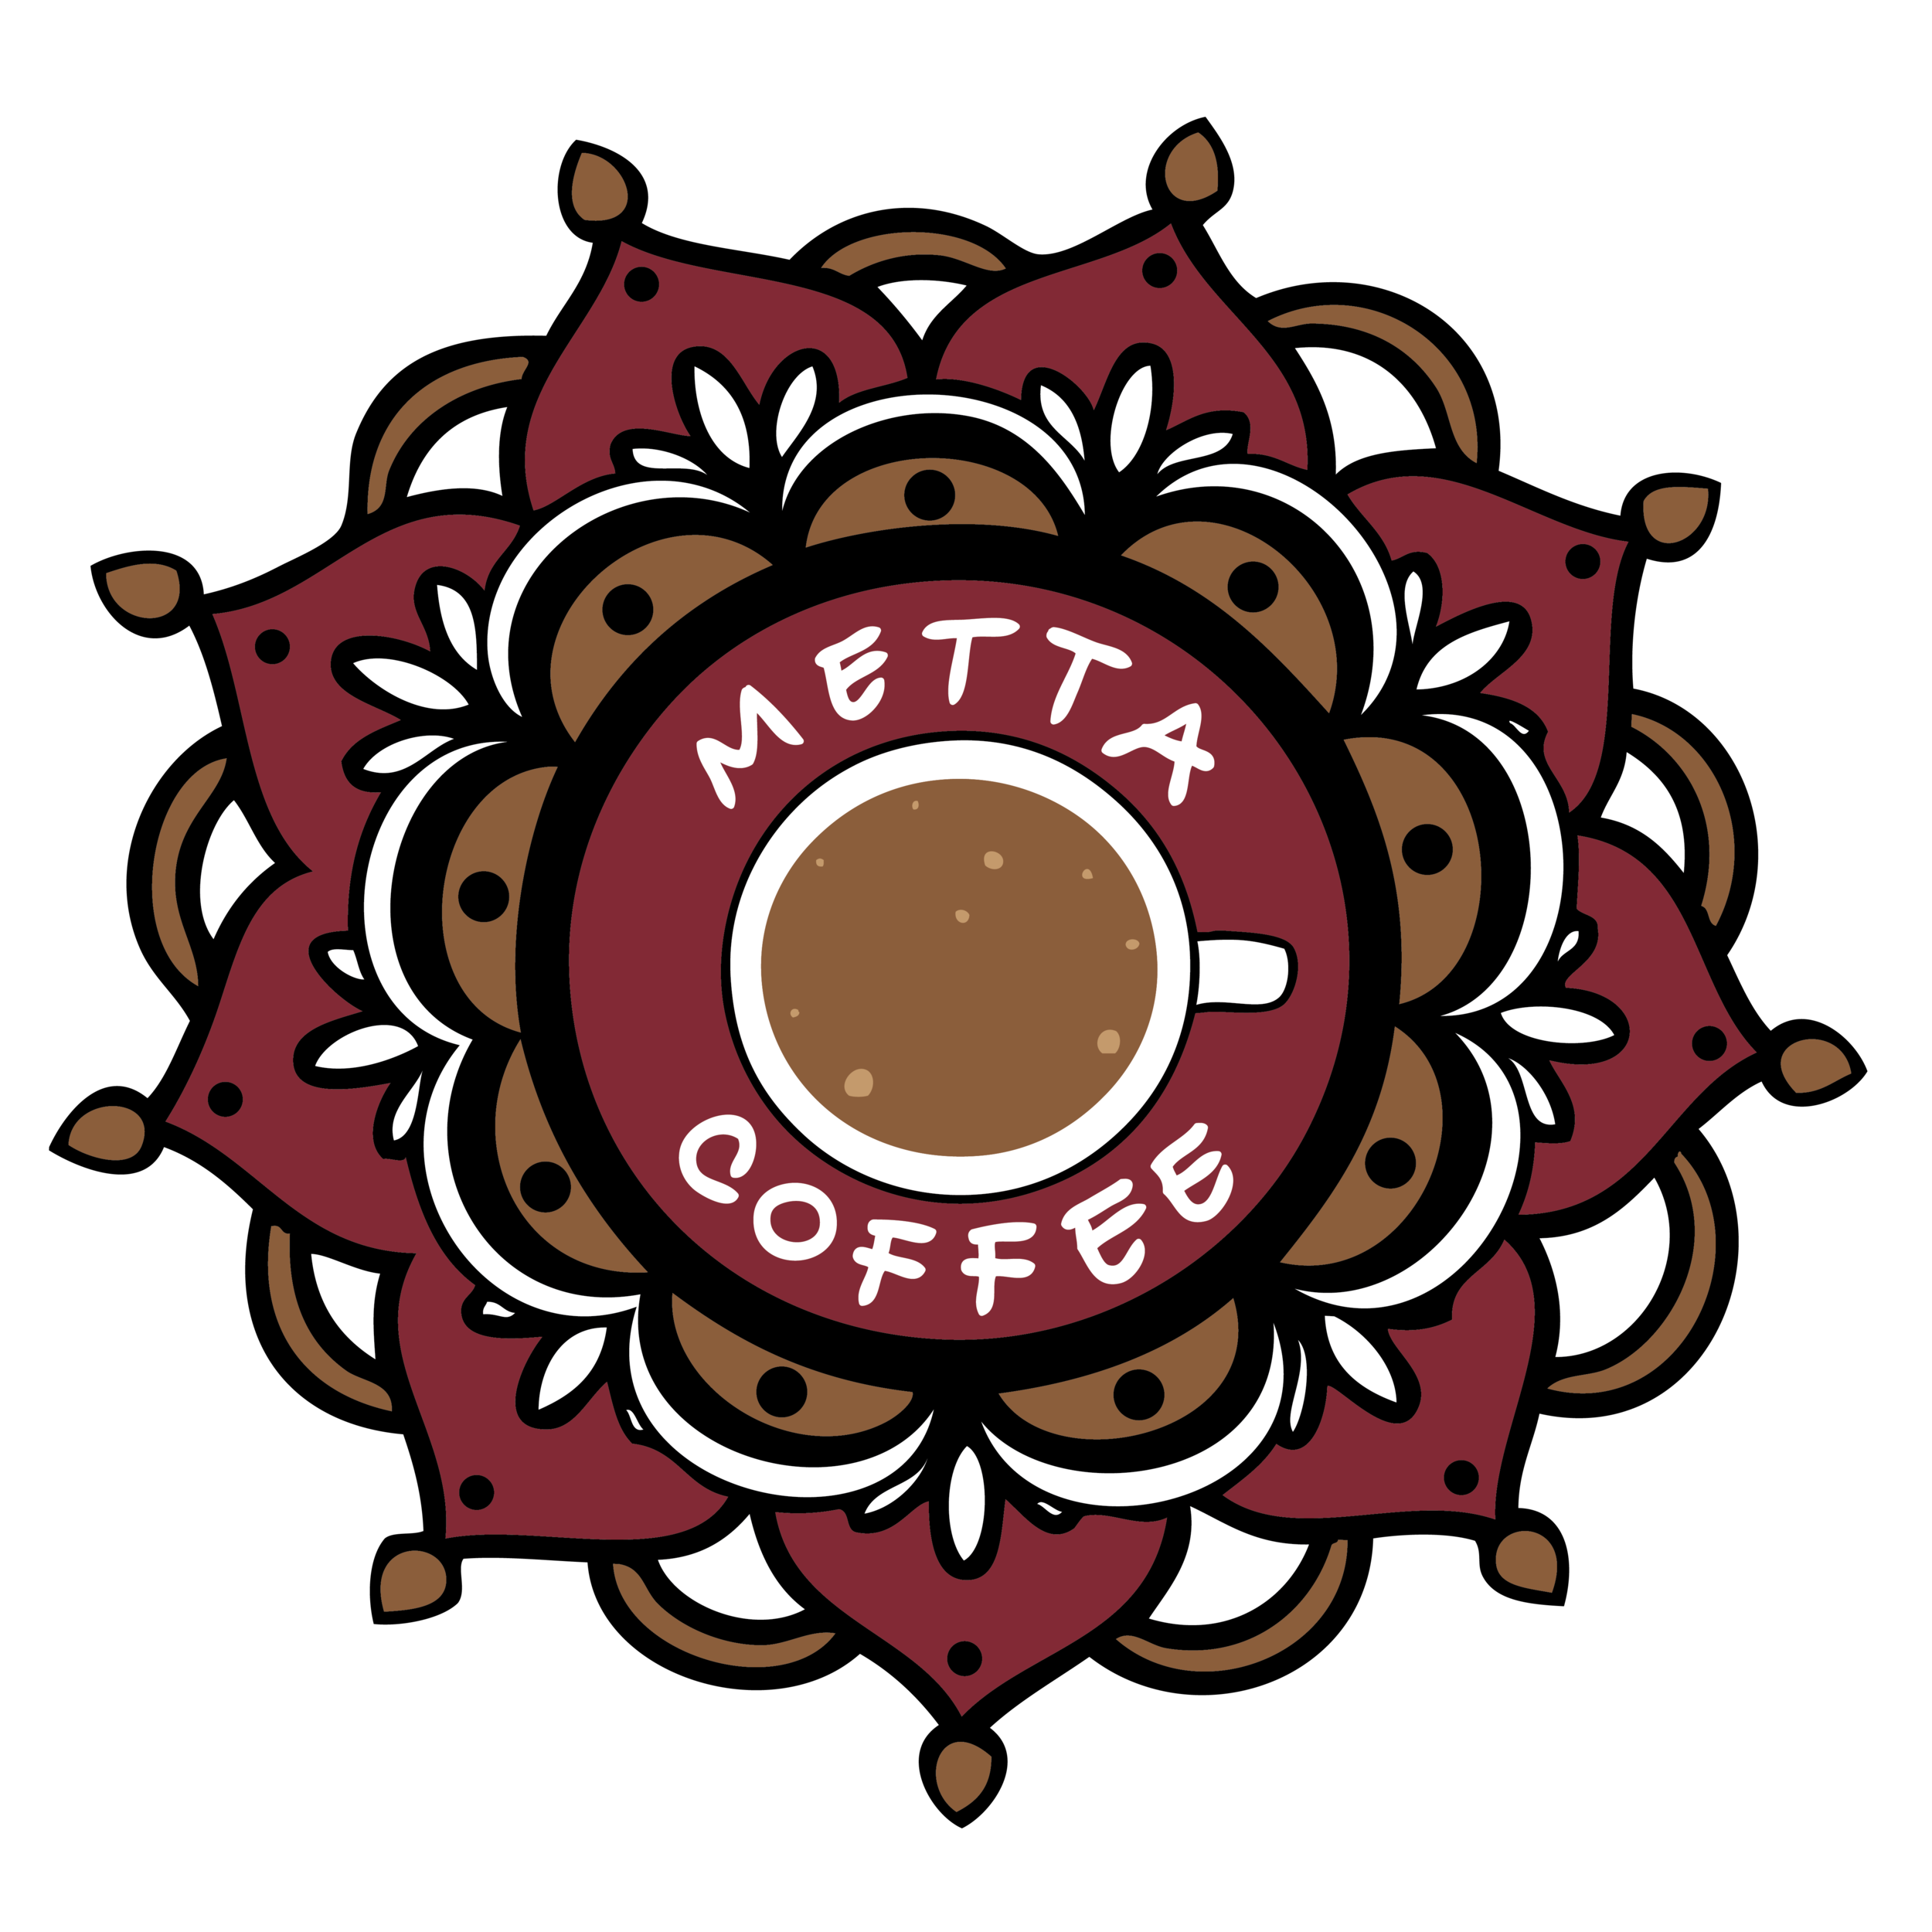 Metta Coffee Cafe